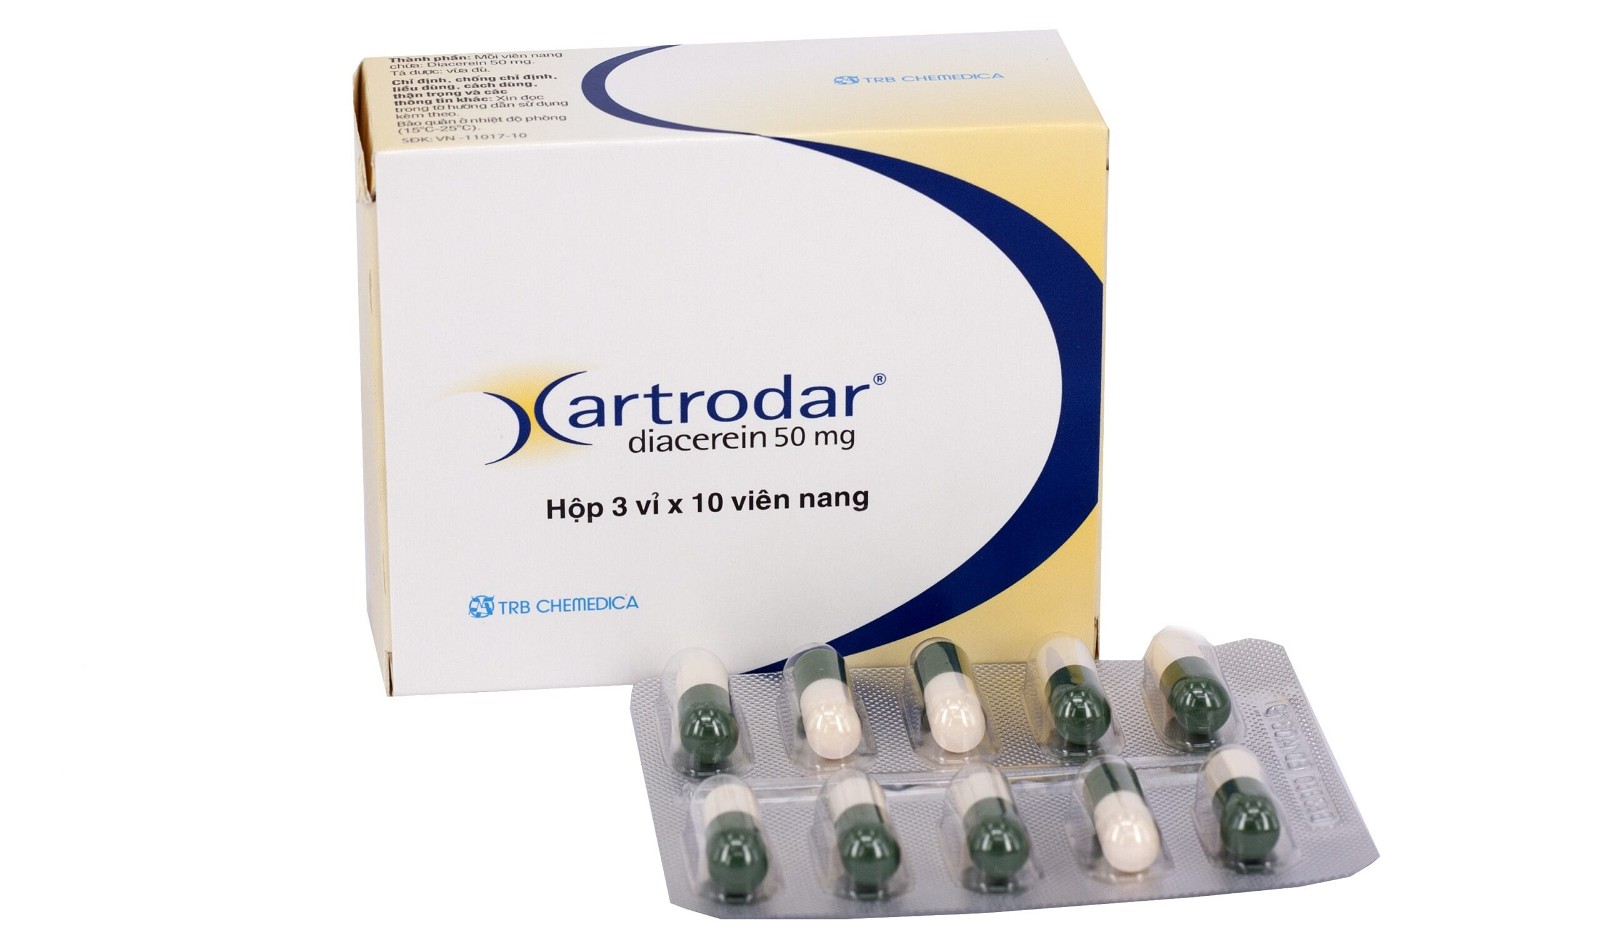 Thuốc Artrodar được đóng gói trong hộp 3 vỉ, mỗi vỉ 10 viên